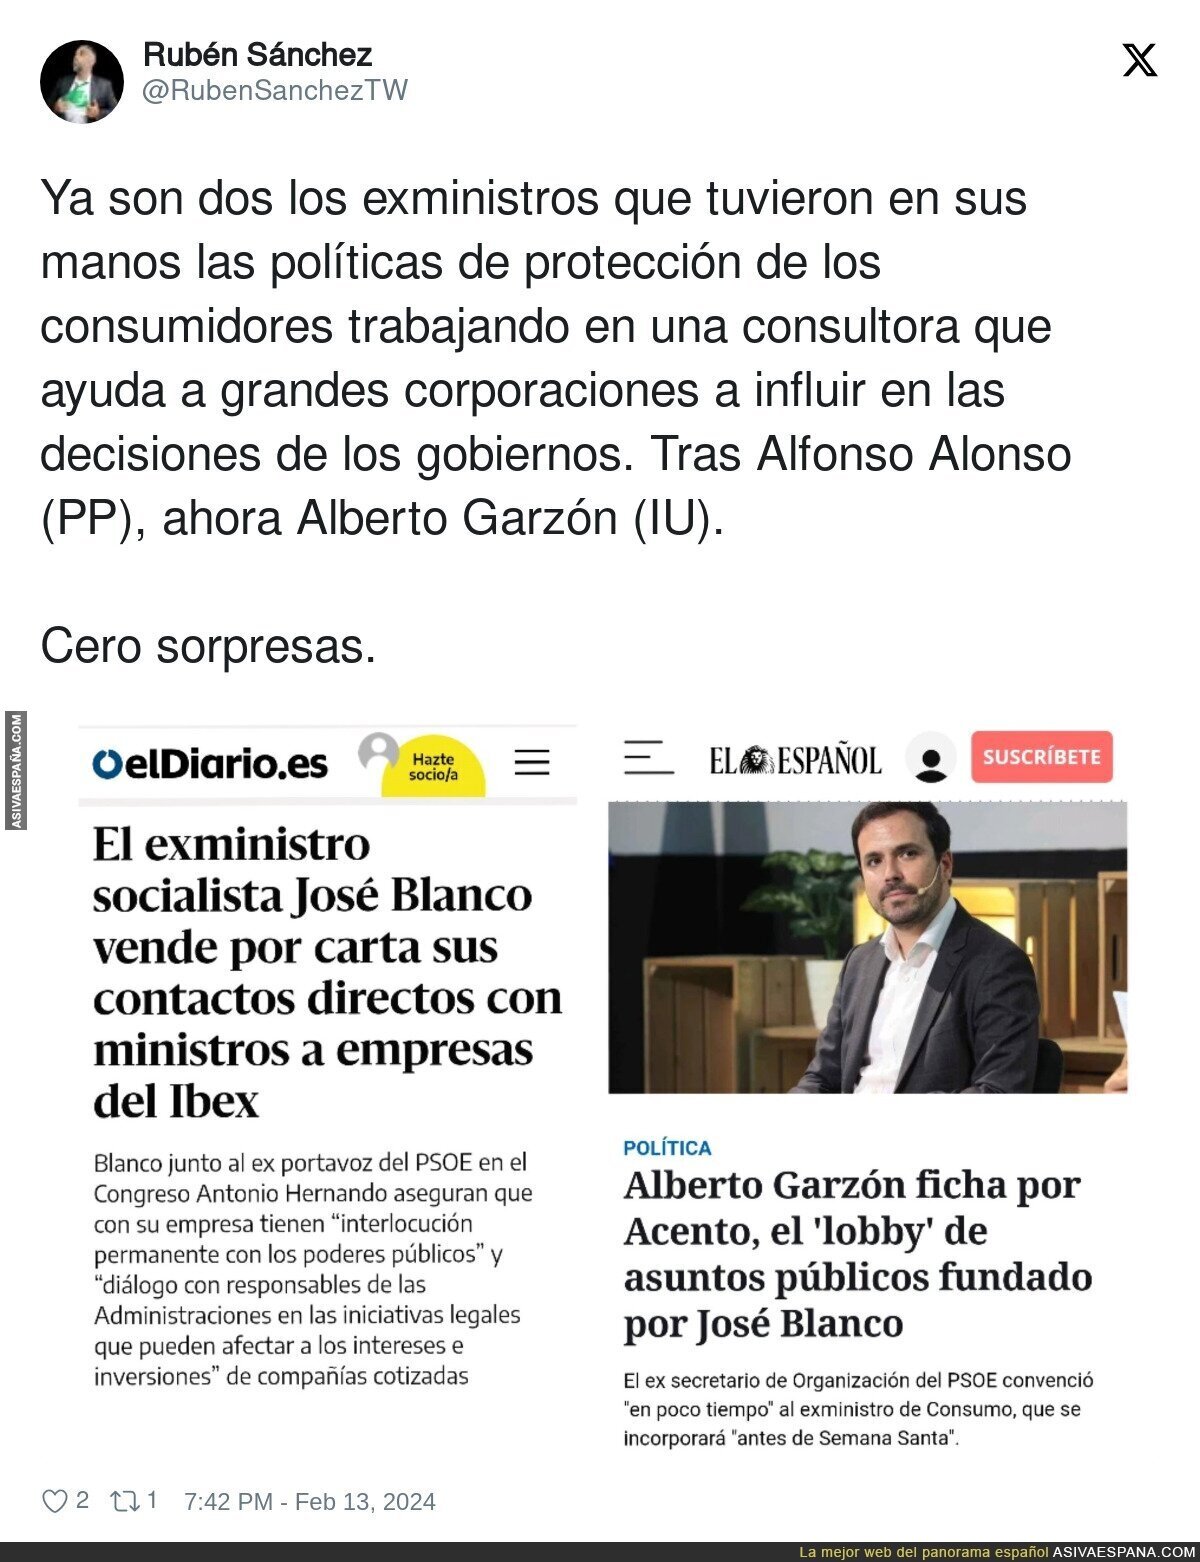 Alberto Garzón cae en las puertas giratorias